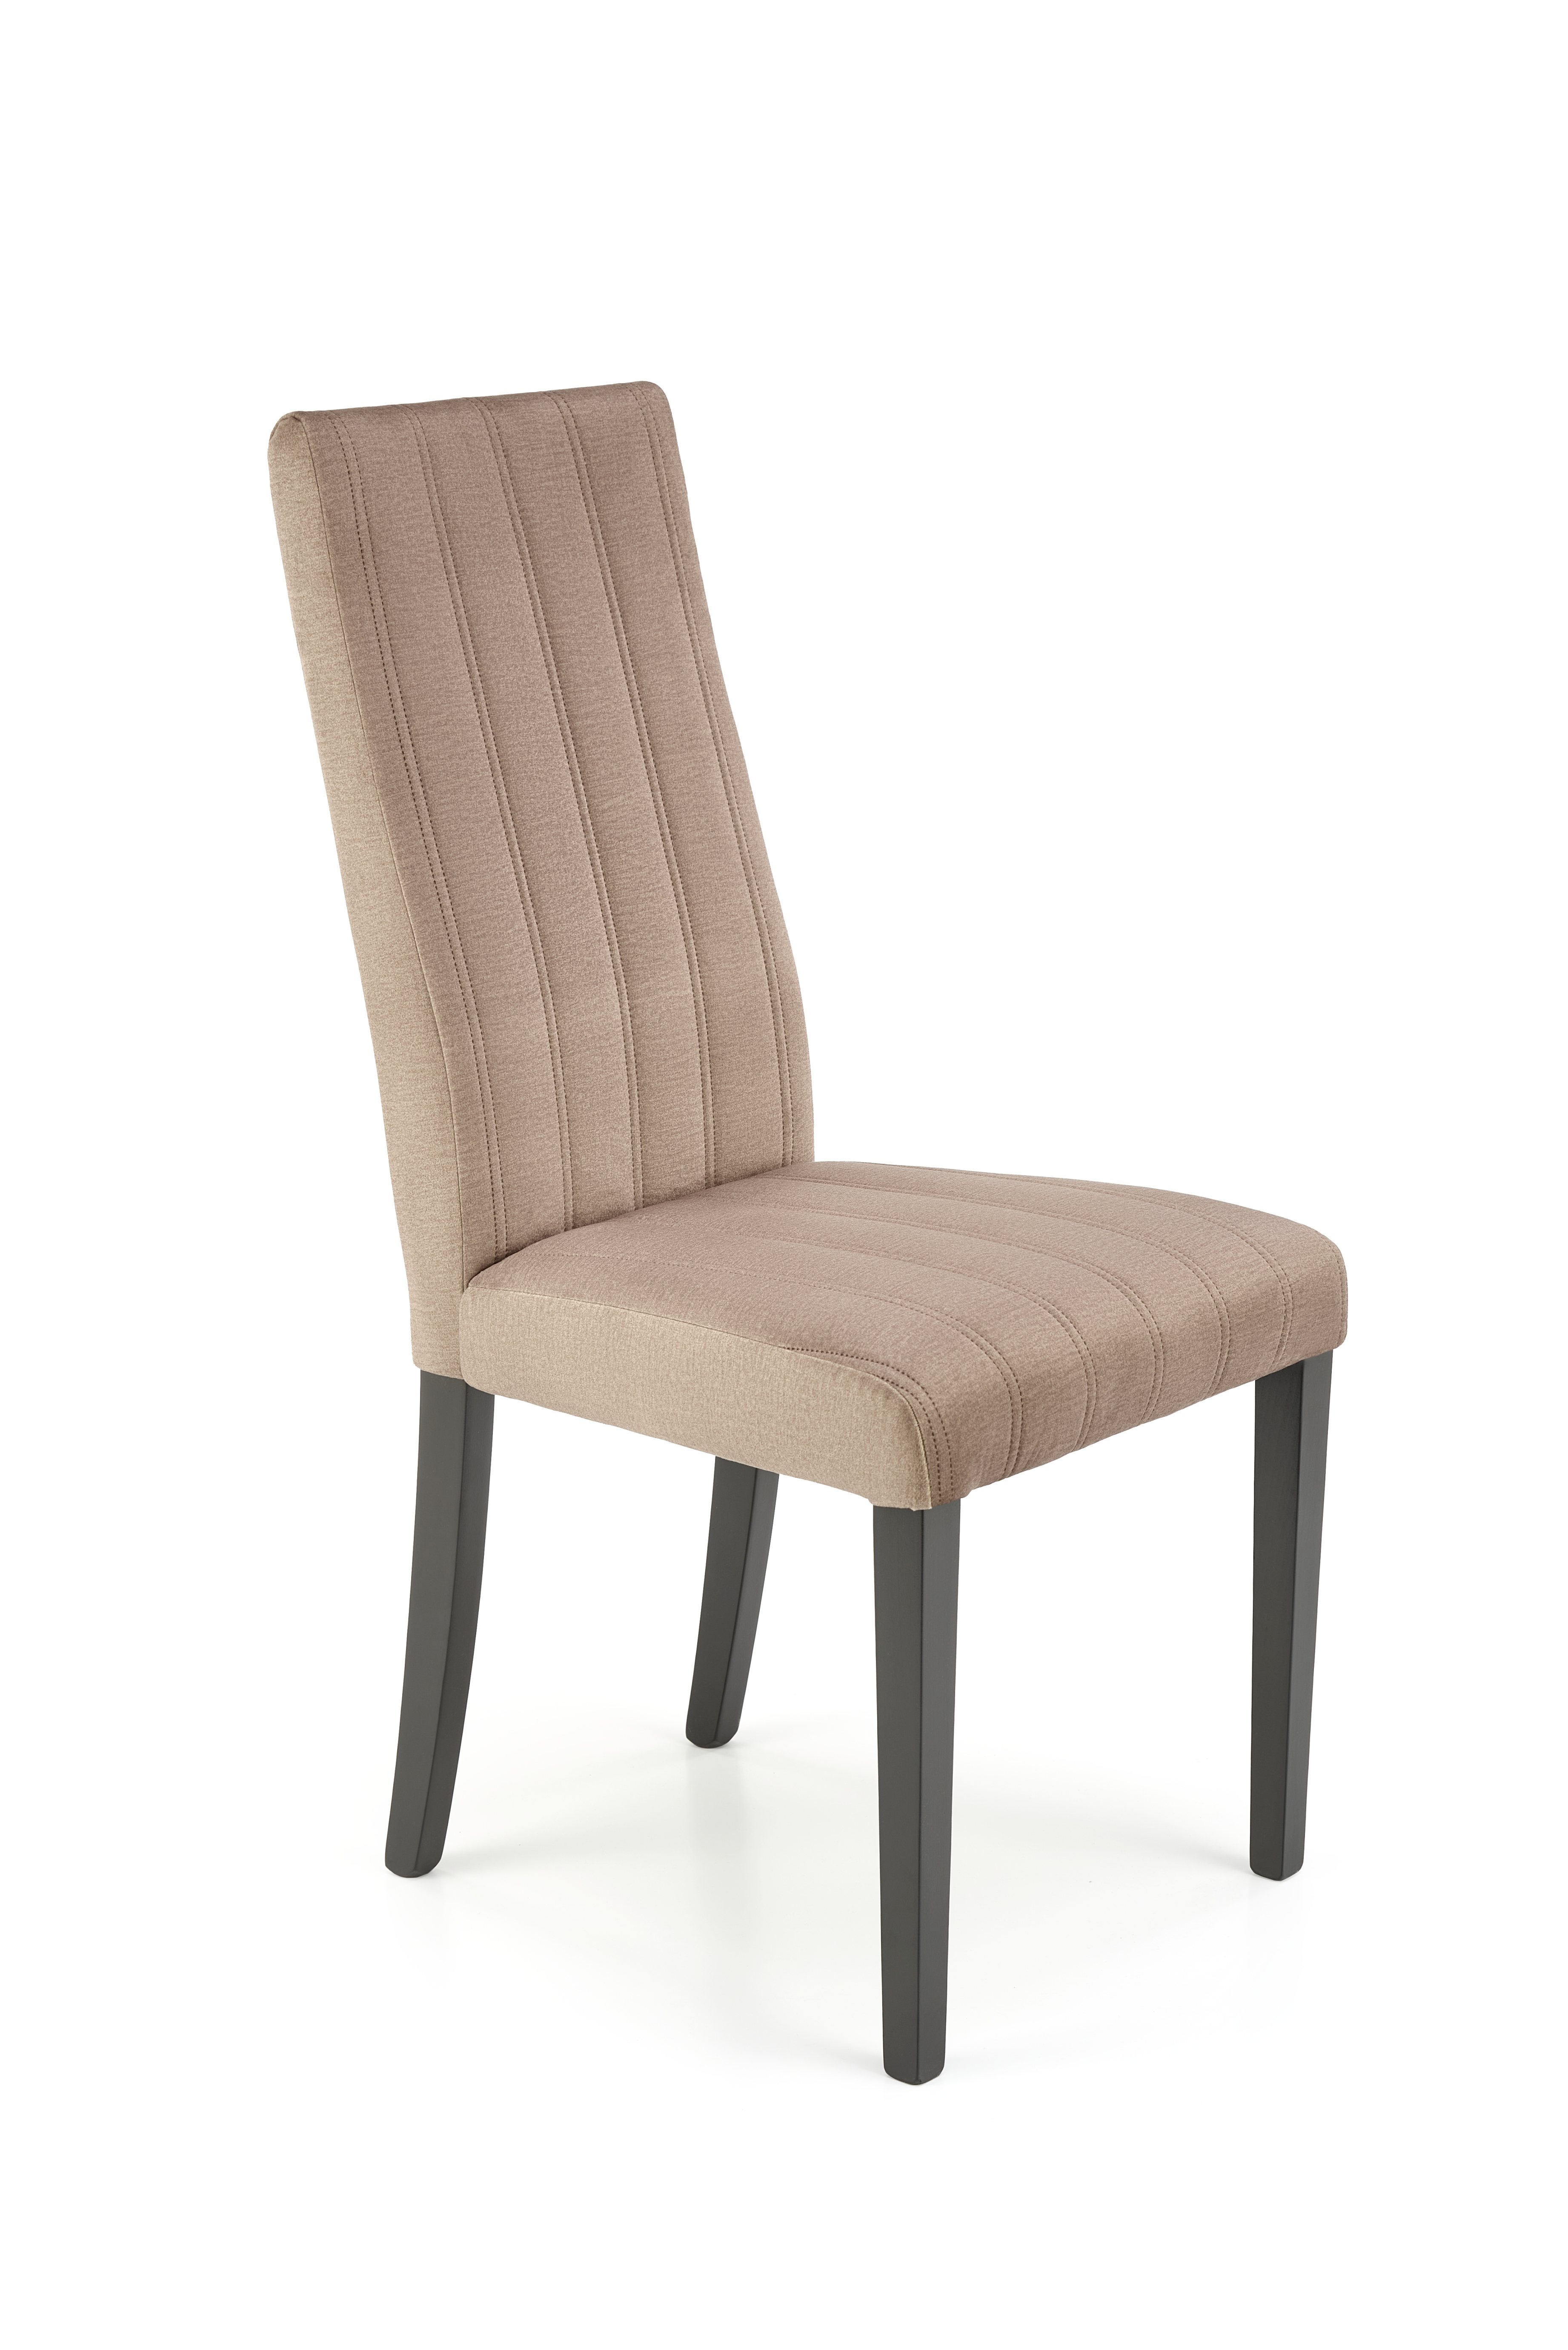 Krzesło tapicerowane Diego 2 - czarny / beż diego 2 krzesło czarny / tap. velvet pikowany pasy - monolith 09 (beżowy) (1p=2szt)